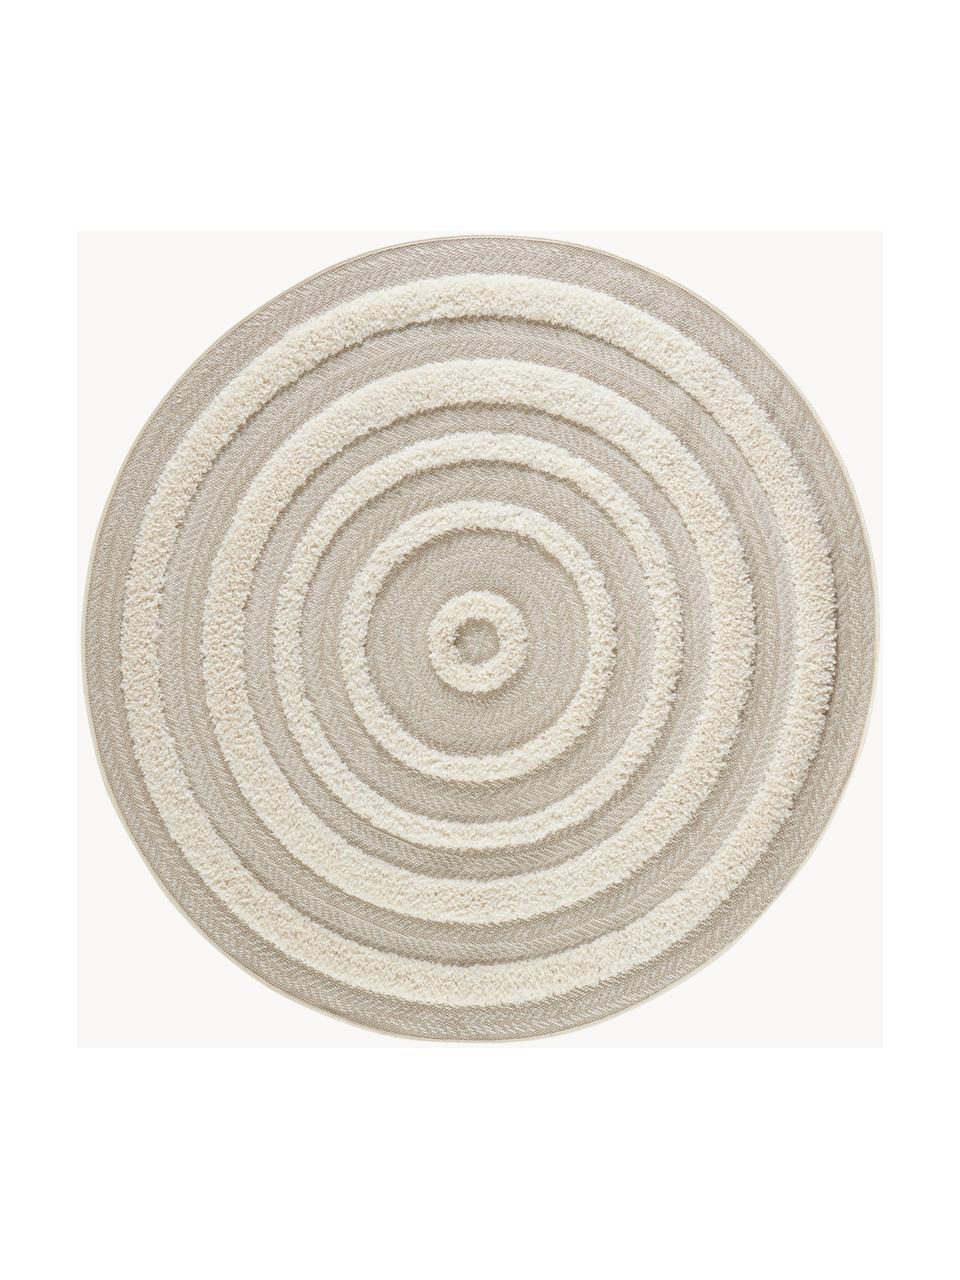 Tappeto rotondo da interno-esterno con motivo a rilievo Nador, 100% polipropilene, Beige chiaro, bianco crema, Ø 160 cm (taglia L)